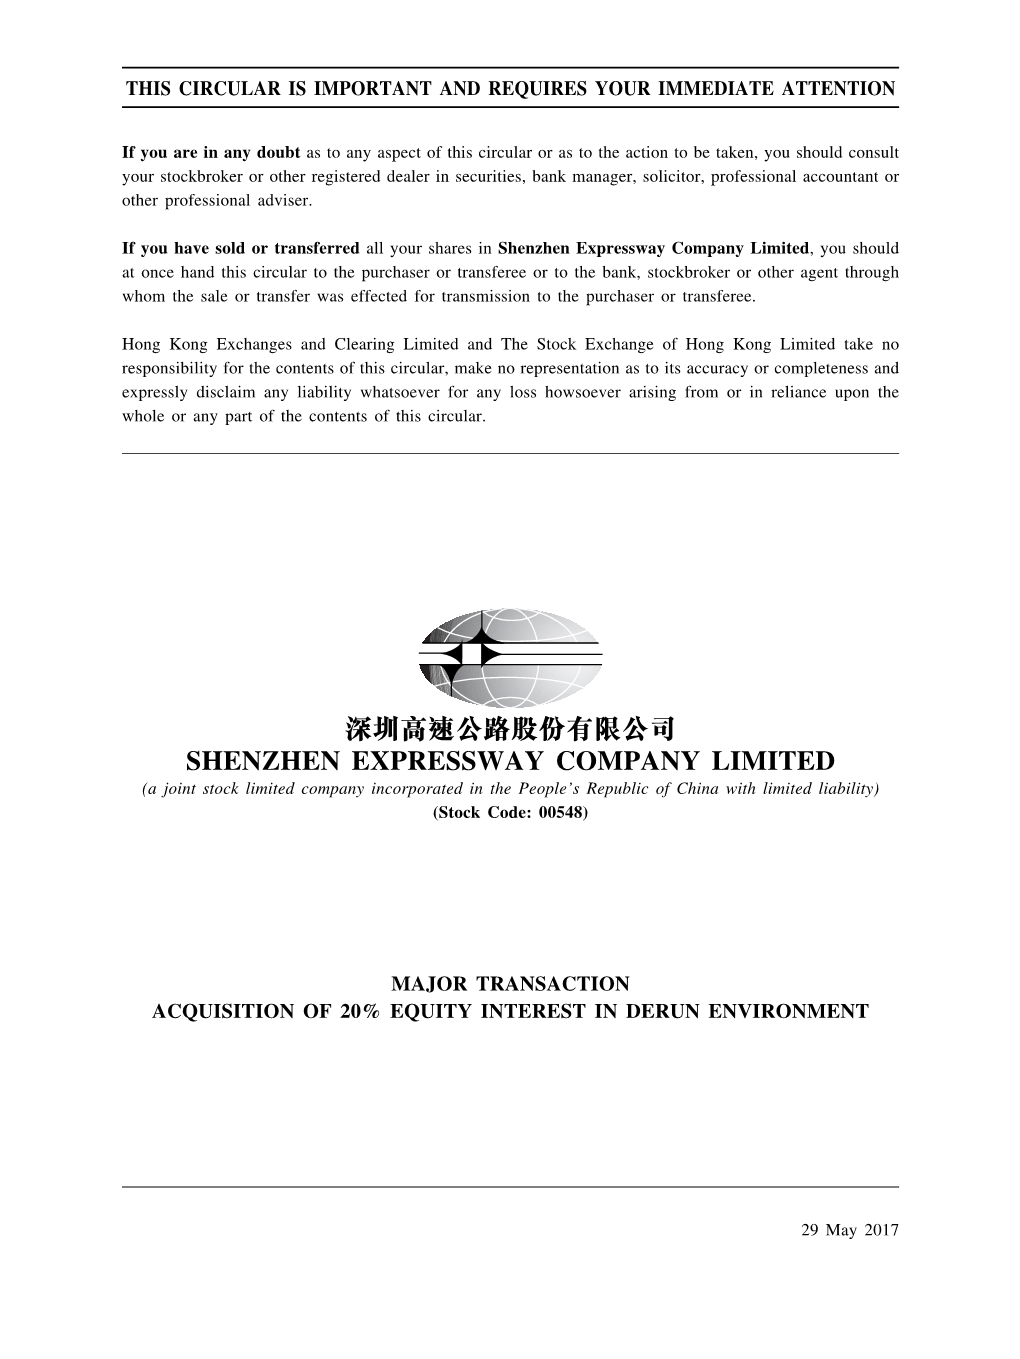 深圳高速公路股份有限公司 Shenzhen Expressway Company Limited